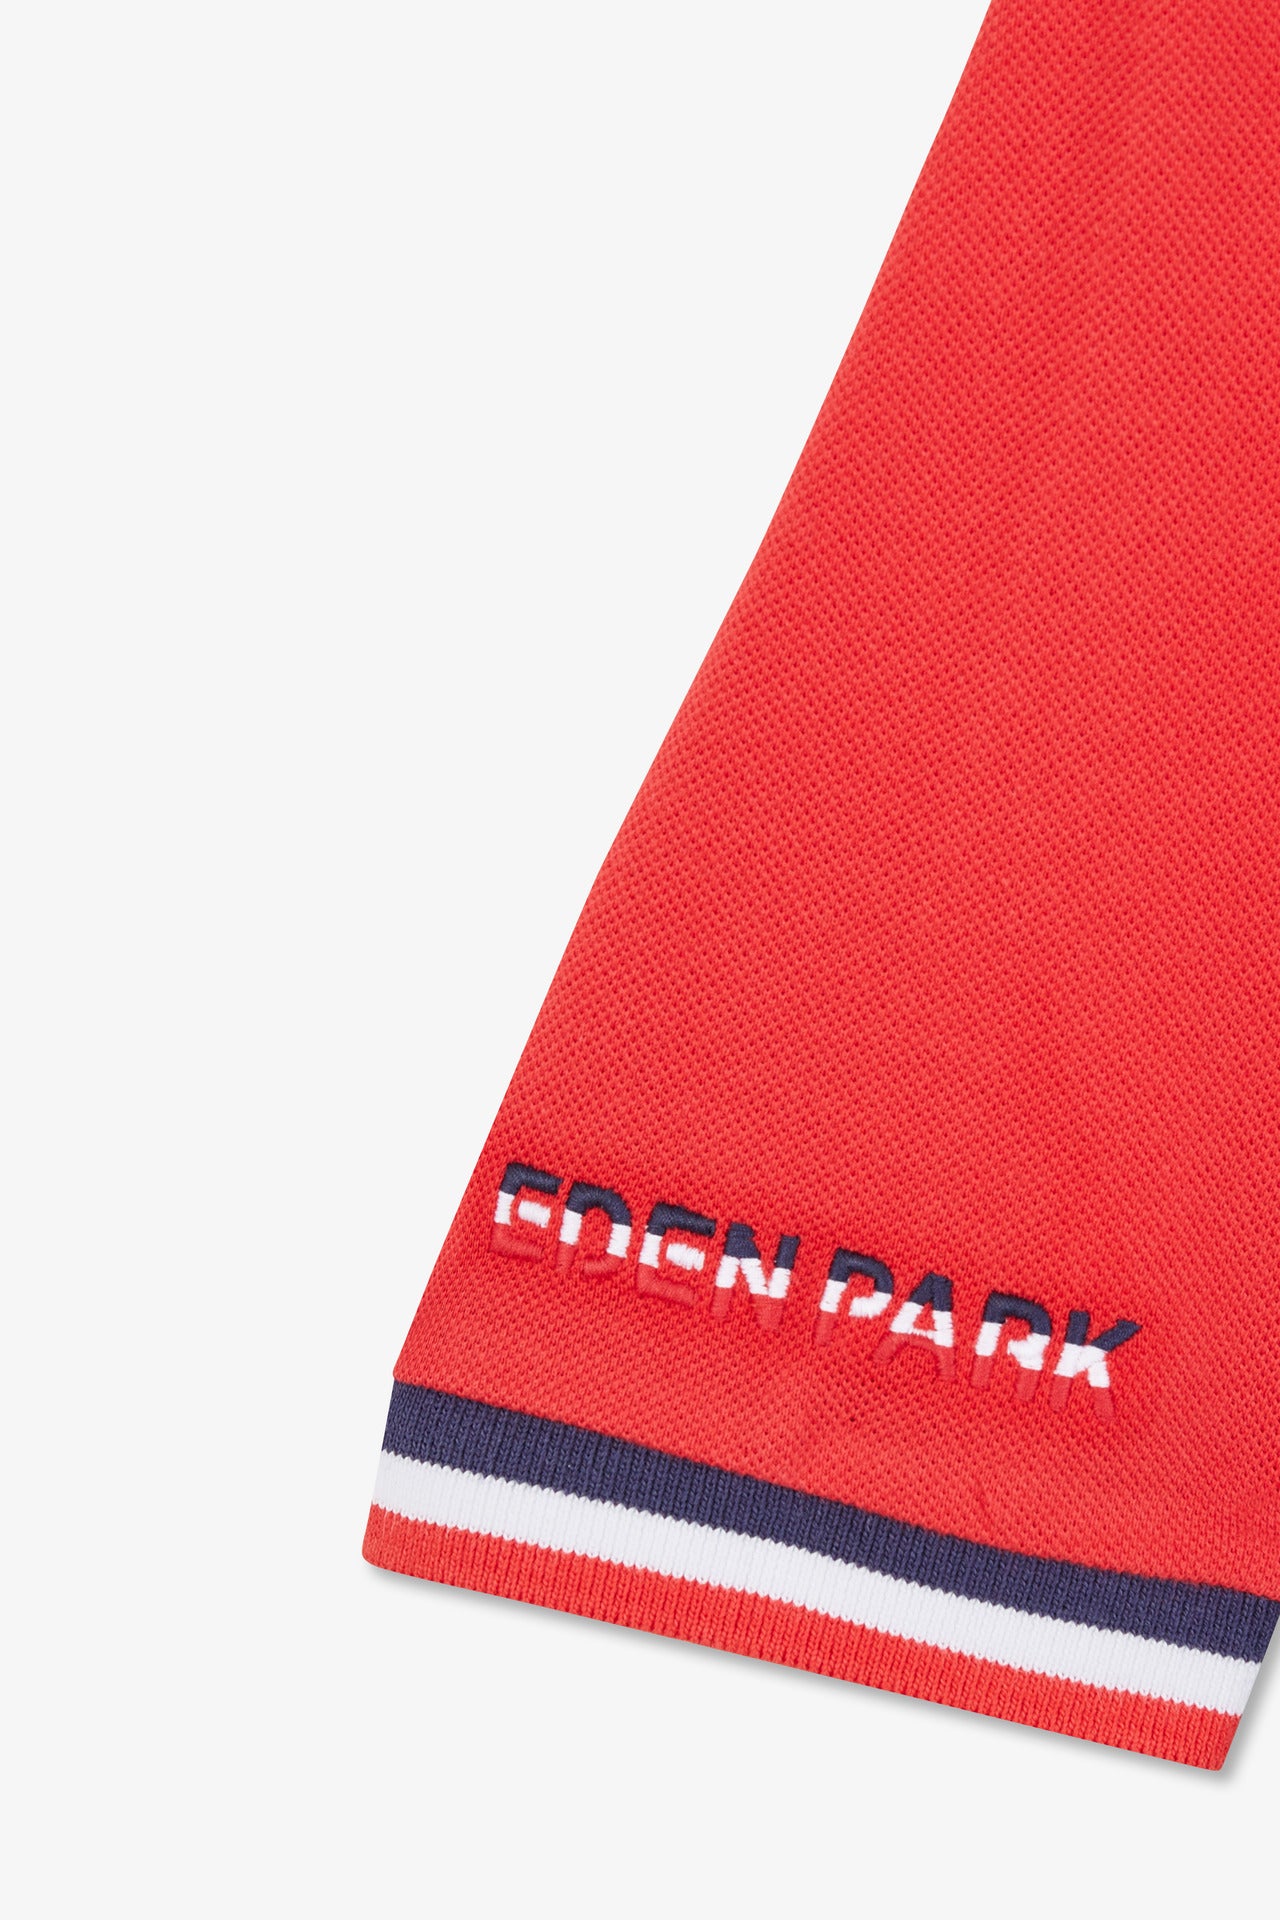 Polo colorblock rouge en coton piqué à broderie XV de France